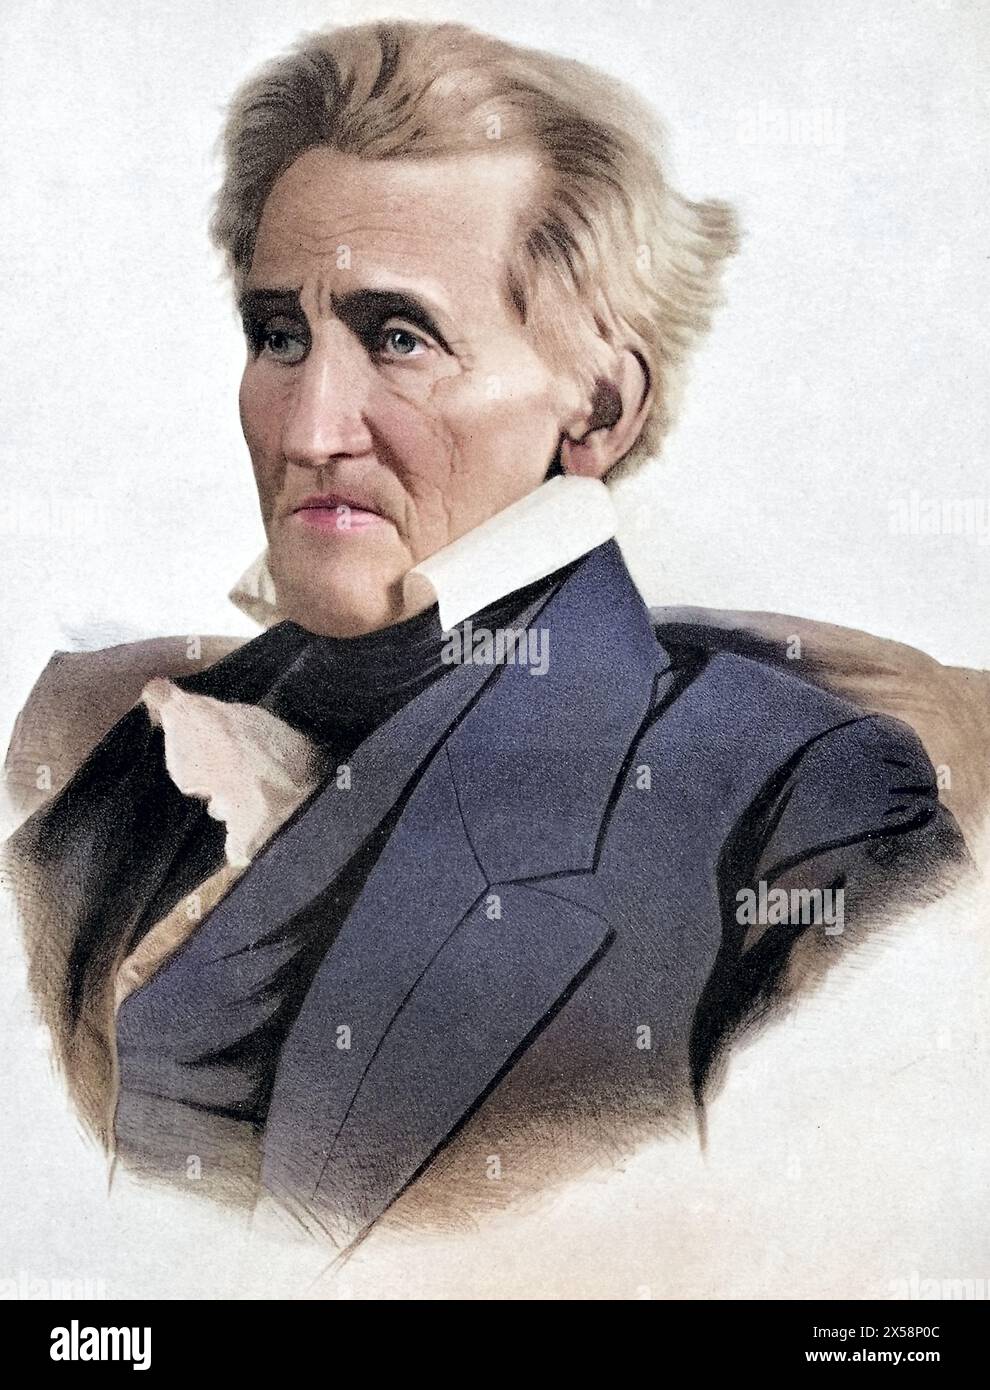 Jackson, Andrew J., 15.3.1767 - 8,6.1845, général et politicien américain (Dem.), LE DROIT D'AUTEUR DE L'ARTISTE N'A PAS ÉTÉ EFFACÉ Banque D'Images